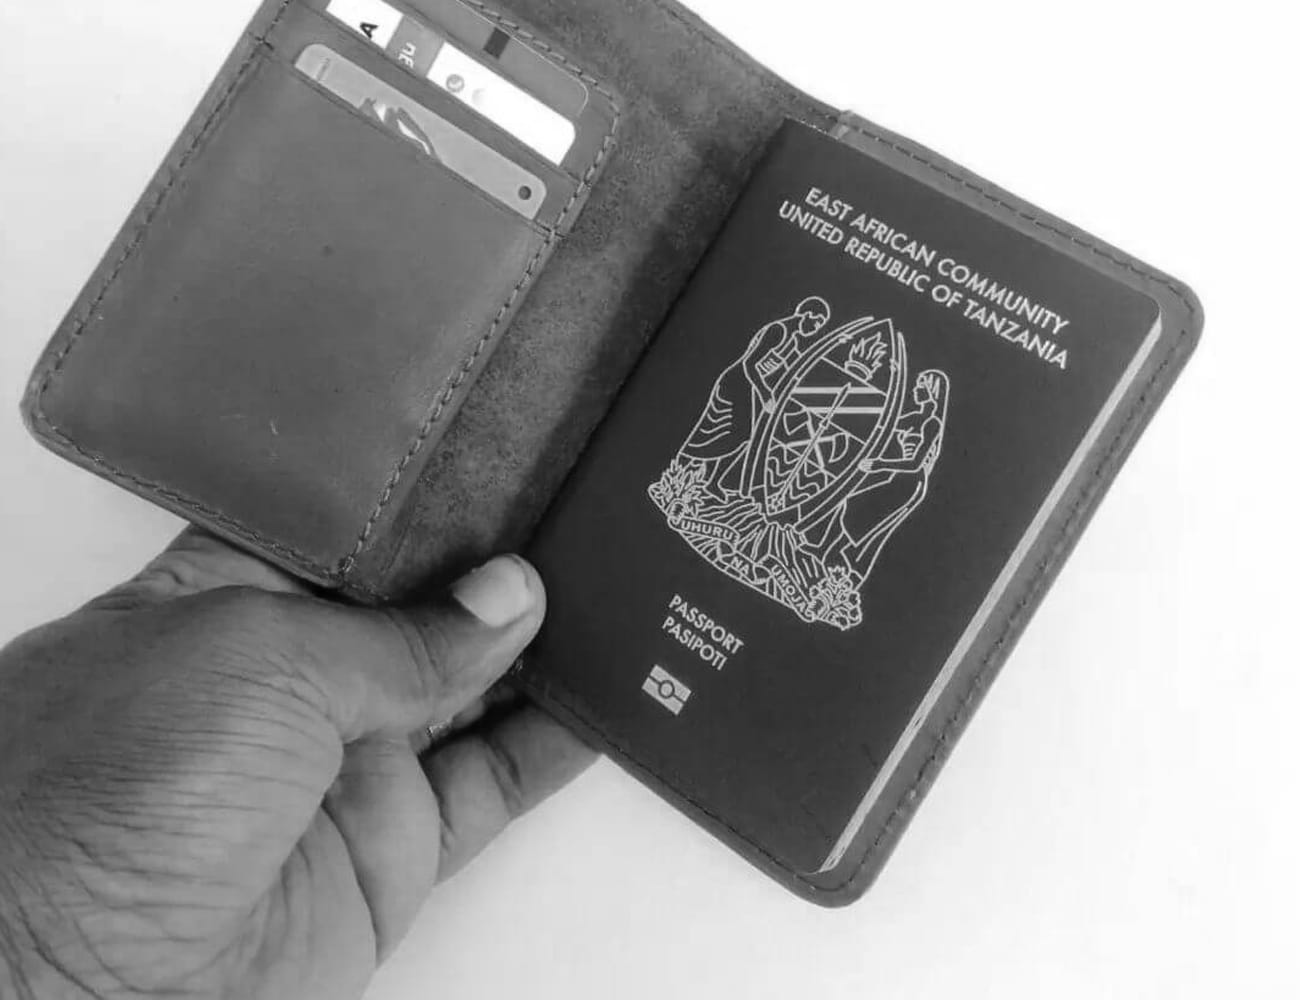 Tanzanian Passport in a Wallet